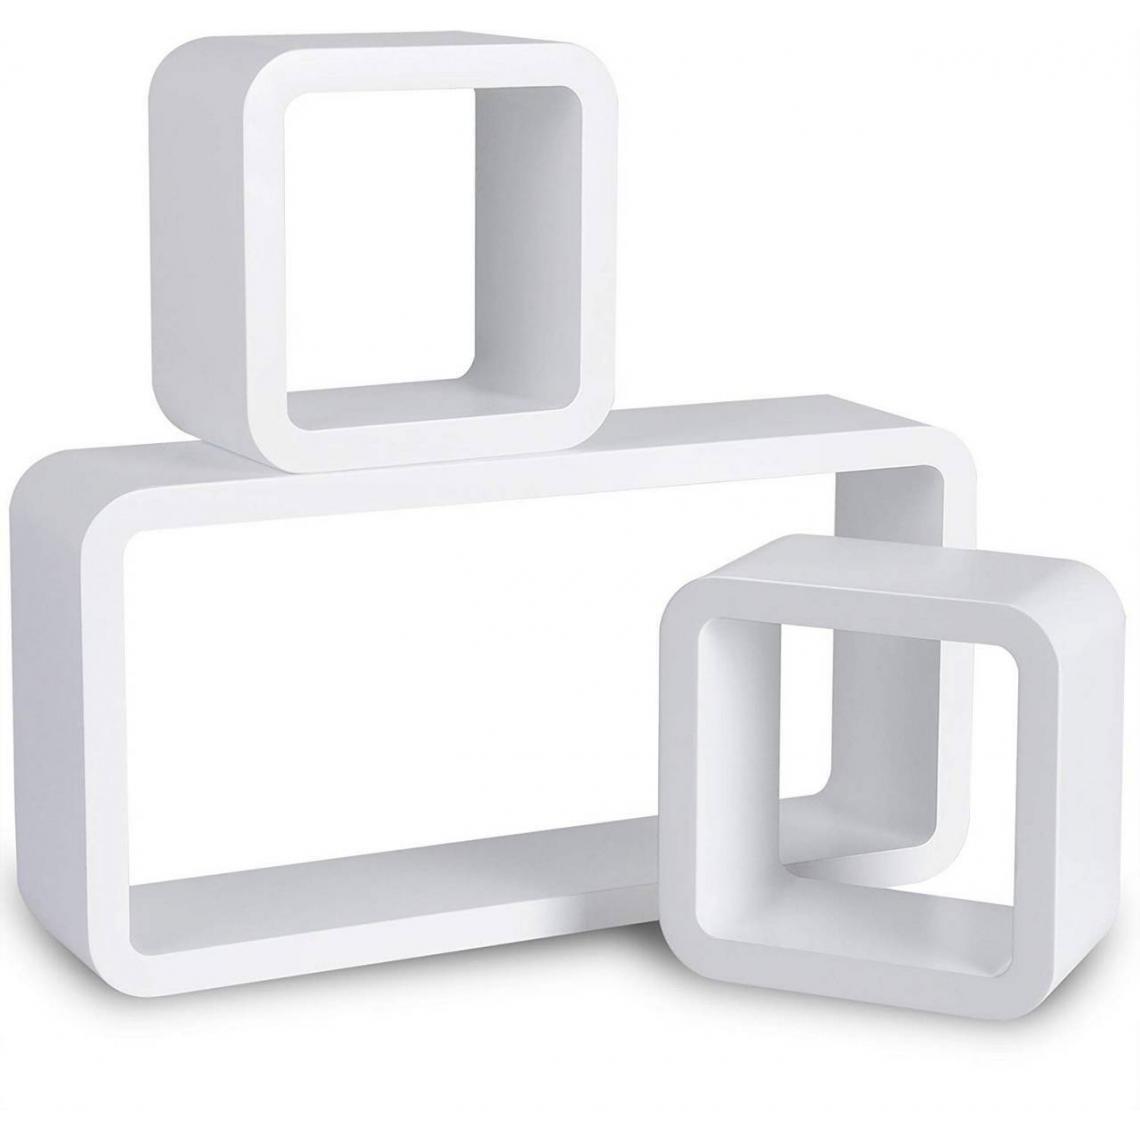 Helloshop26 - Lot de 3 cubes modèle étagère murale blanc 19_0000431 - Etagères